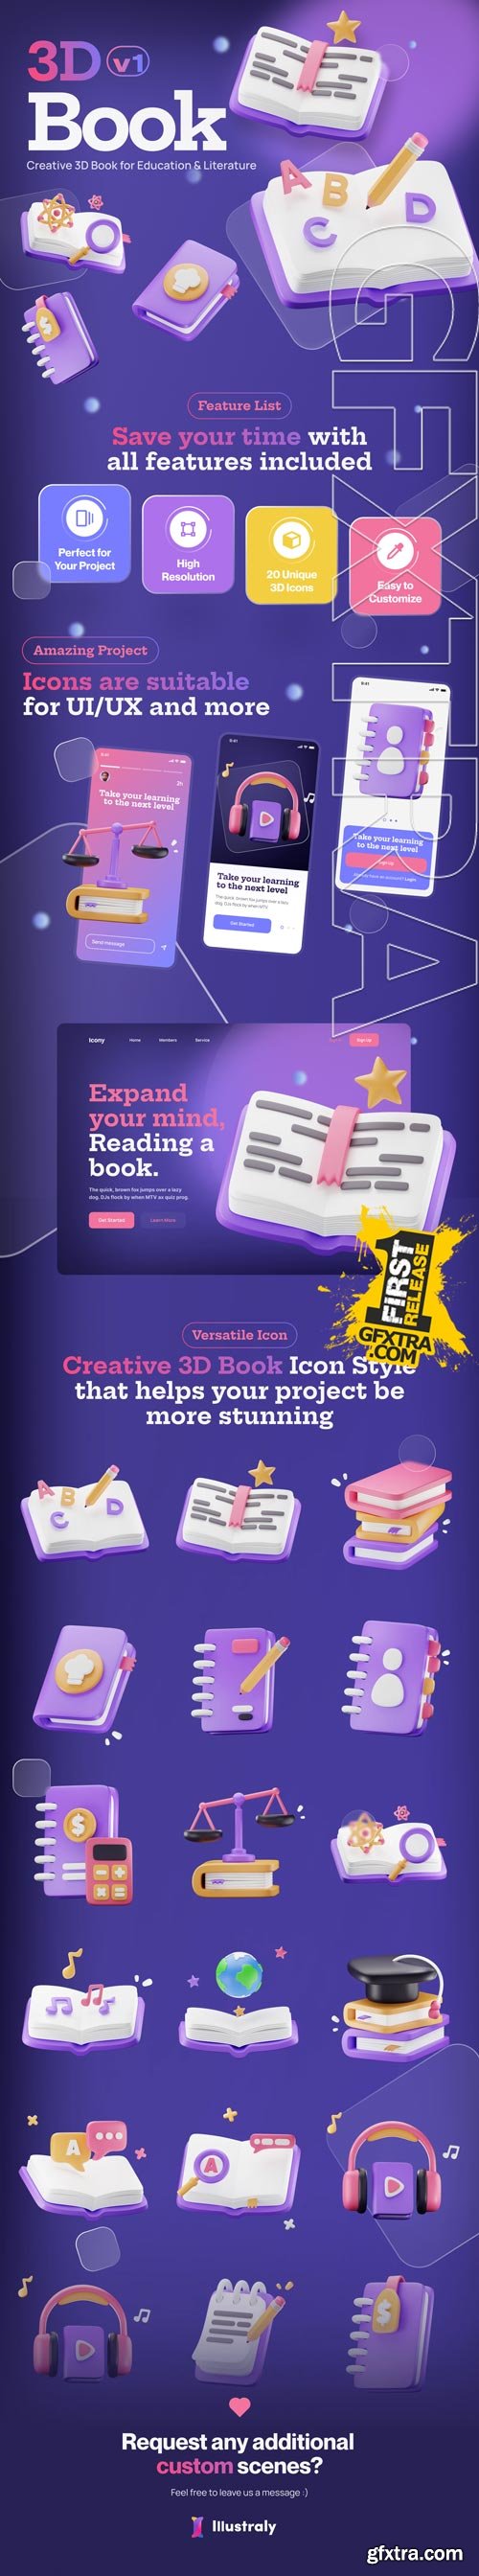 Bookly - Books, Literature, and College Stuff 3D Icon Set Model